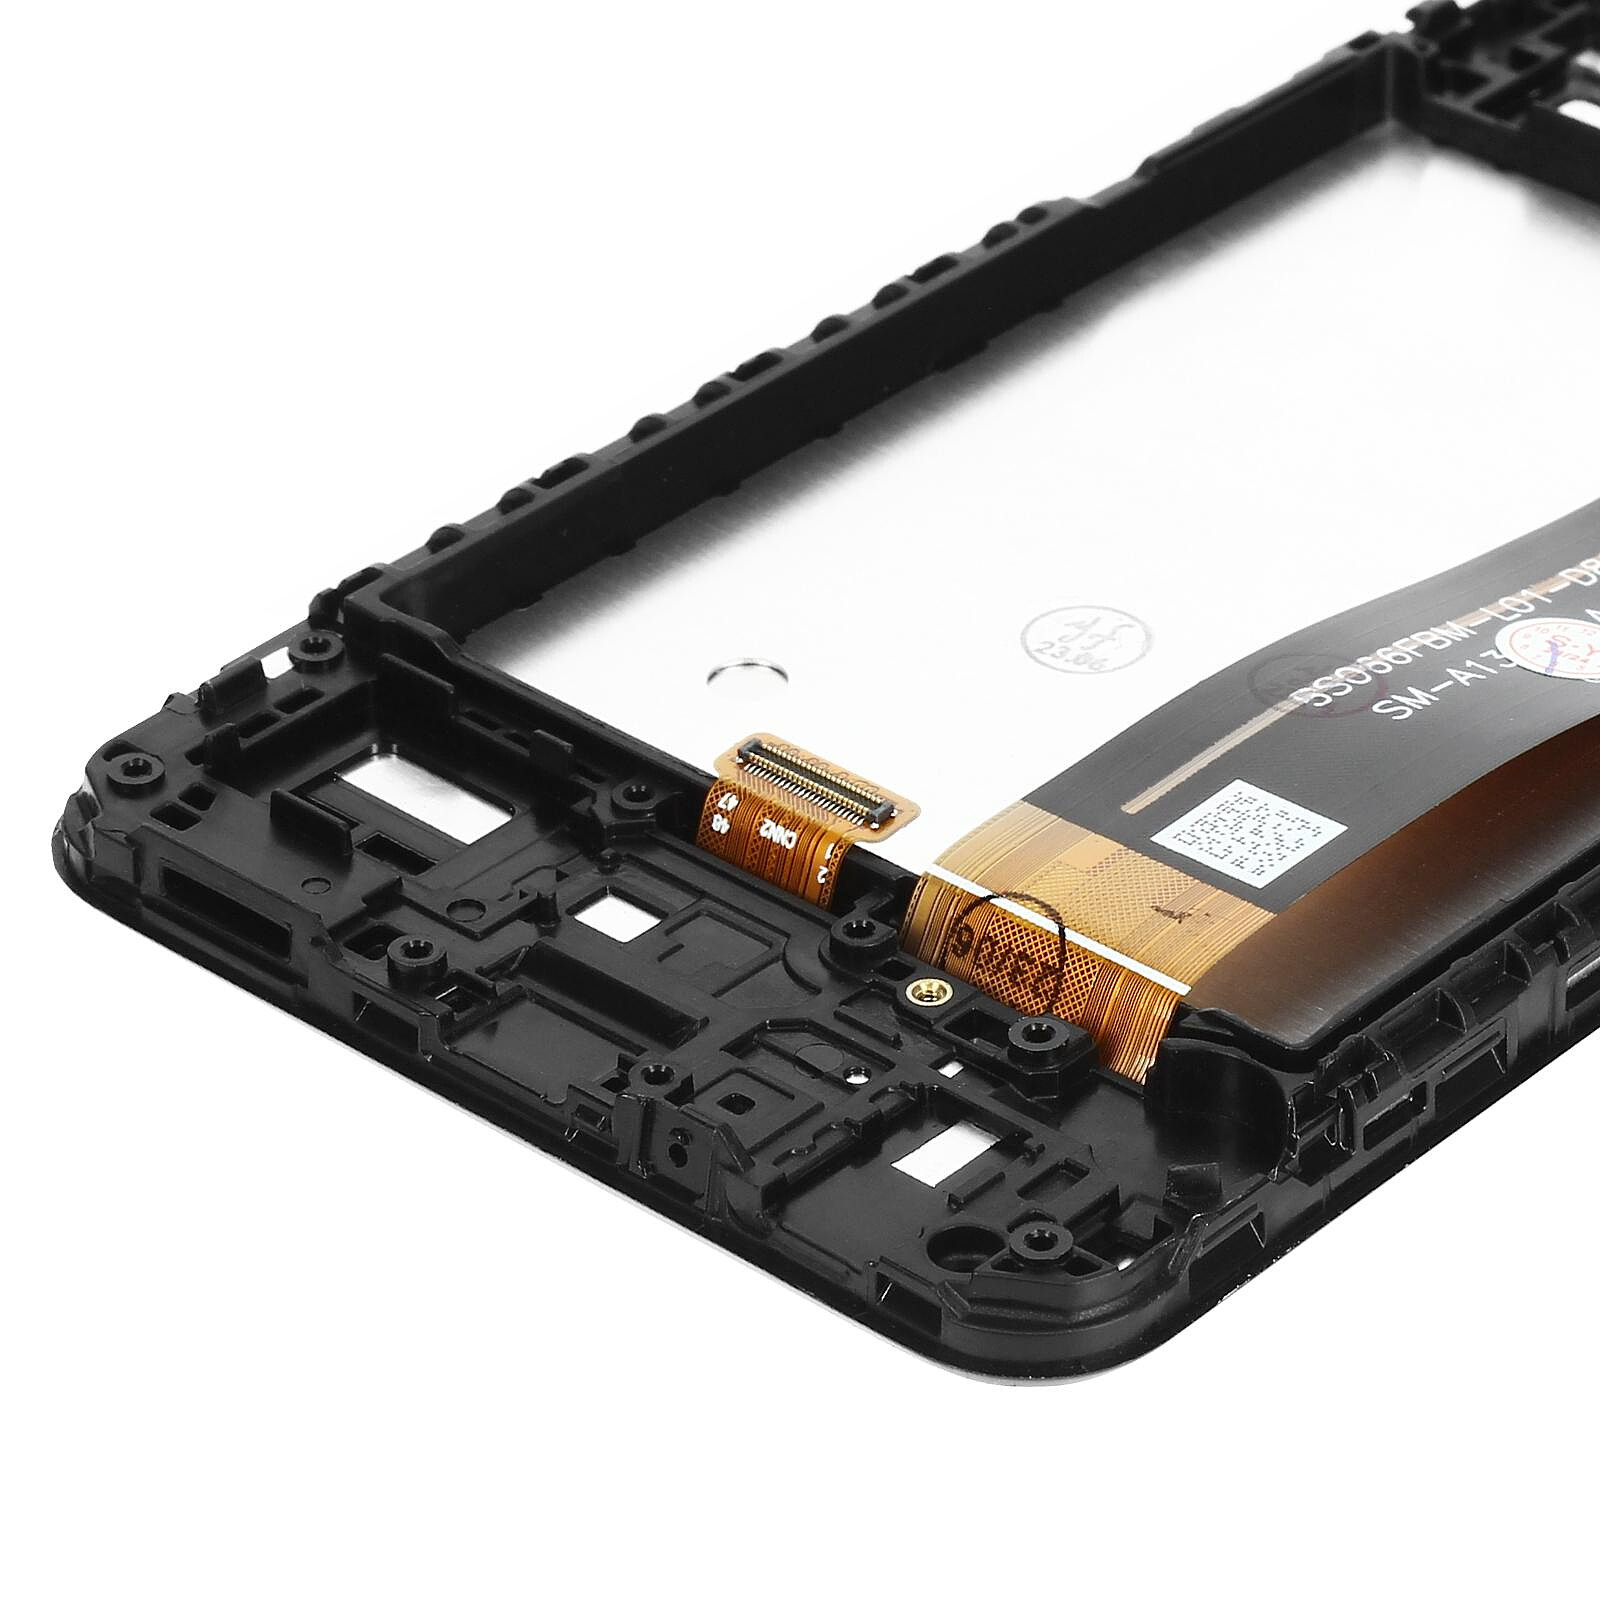 Avizar Ecran LCD Huawei P8 Lite 2017 Vitre Tactile Huawei compatible Noir -  Ecran téléphone - LDLC